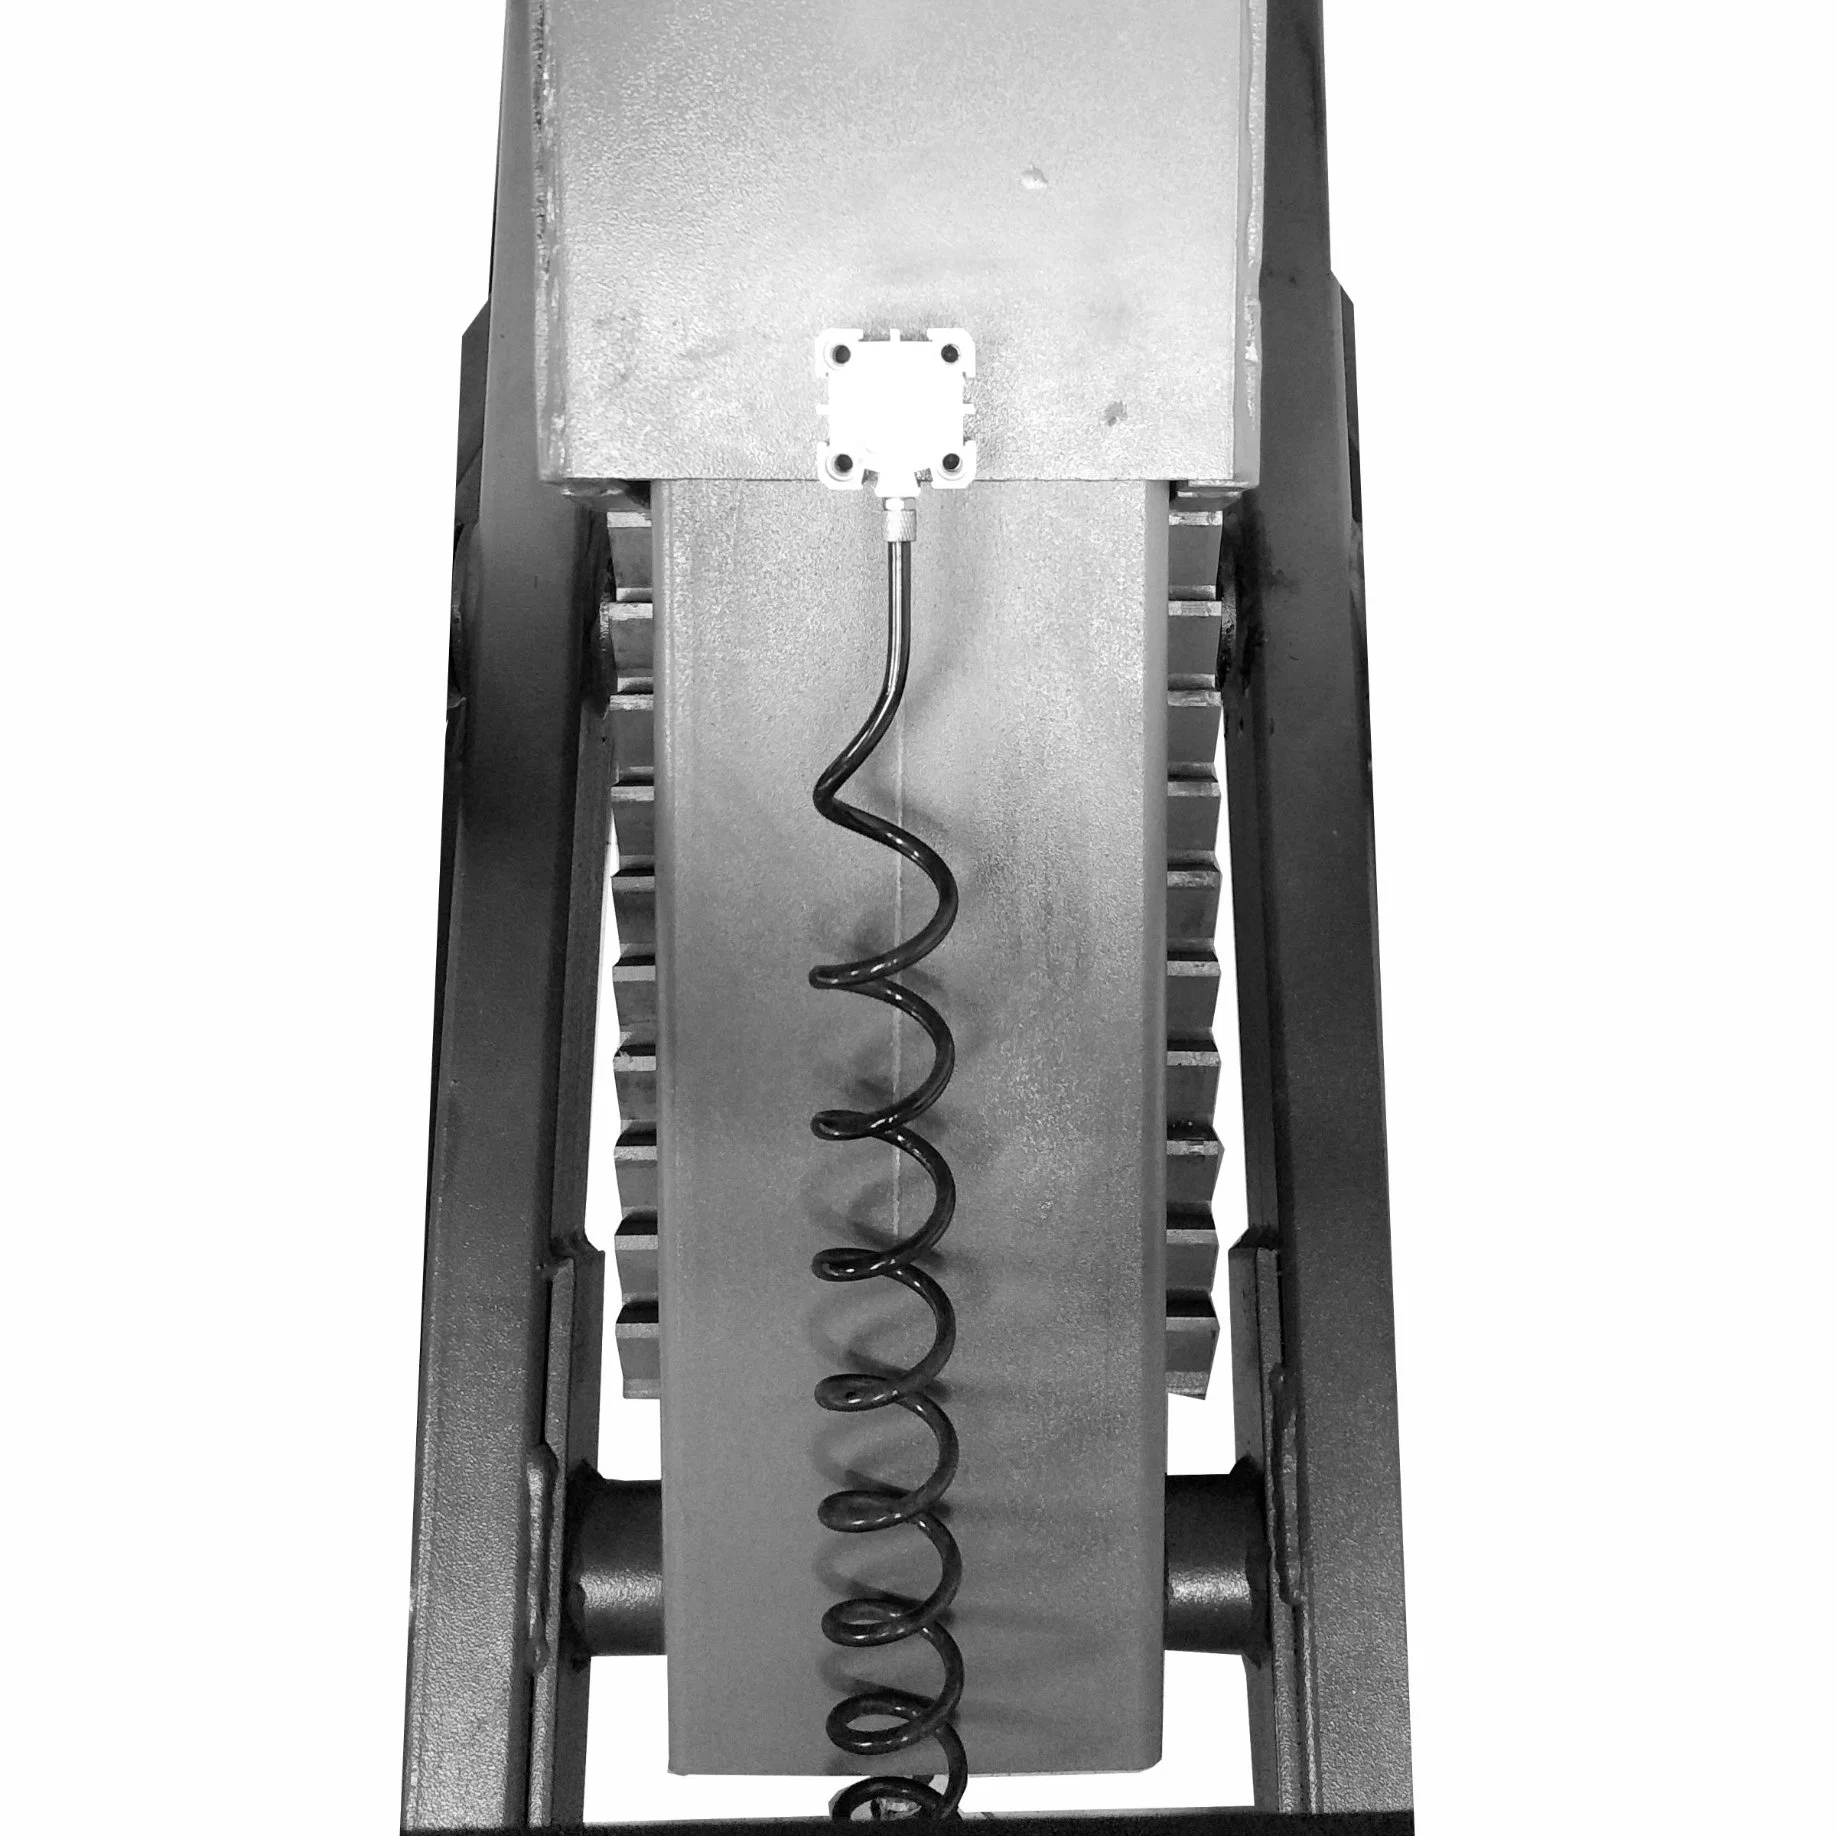 3.0 T потенциала U-E30 полной моря подъемный стол ножничного типа гидравлического оборудования для полного моря подъемный стол ножничного типа платформы для автомобильной промышленности сервисное оборудование